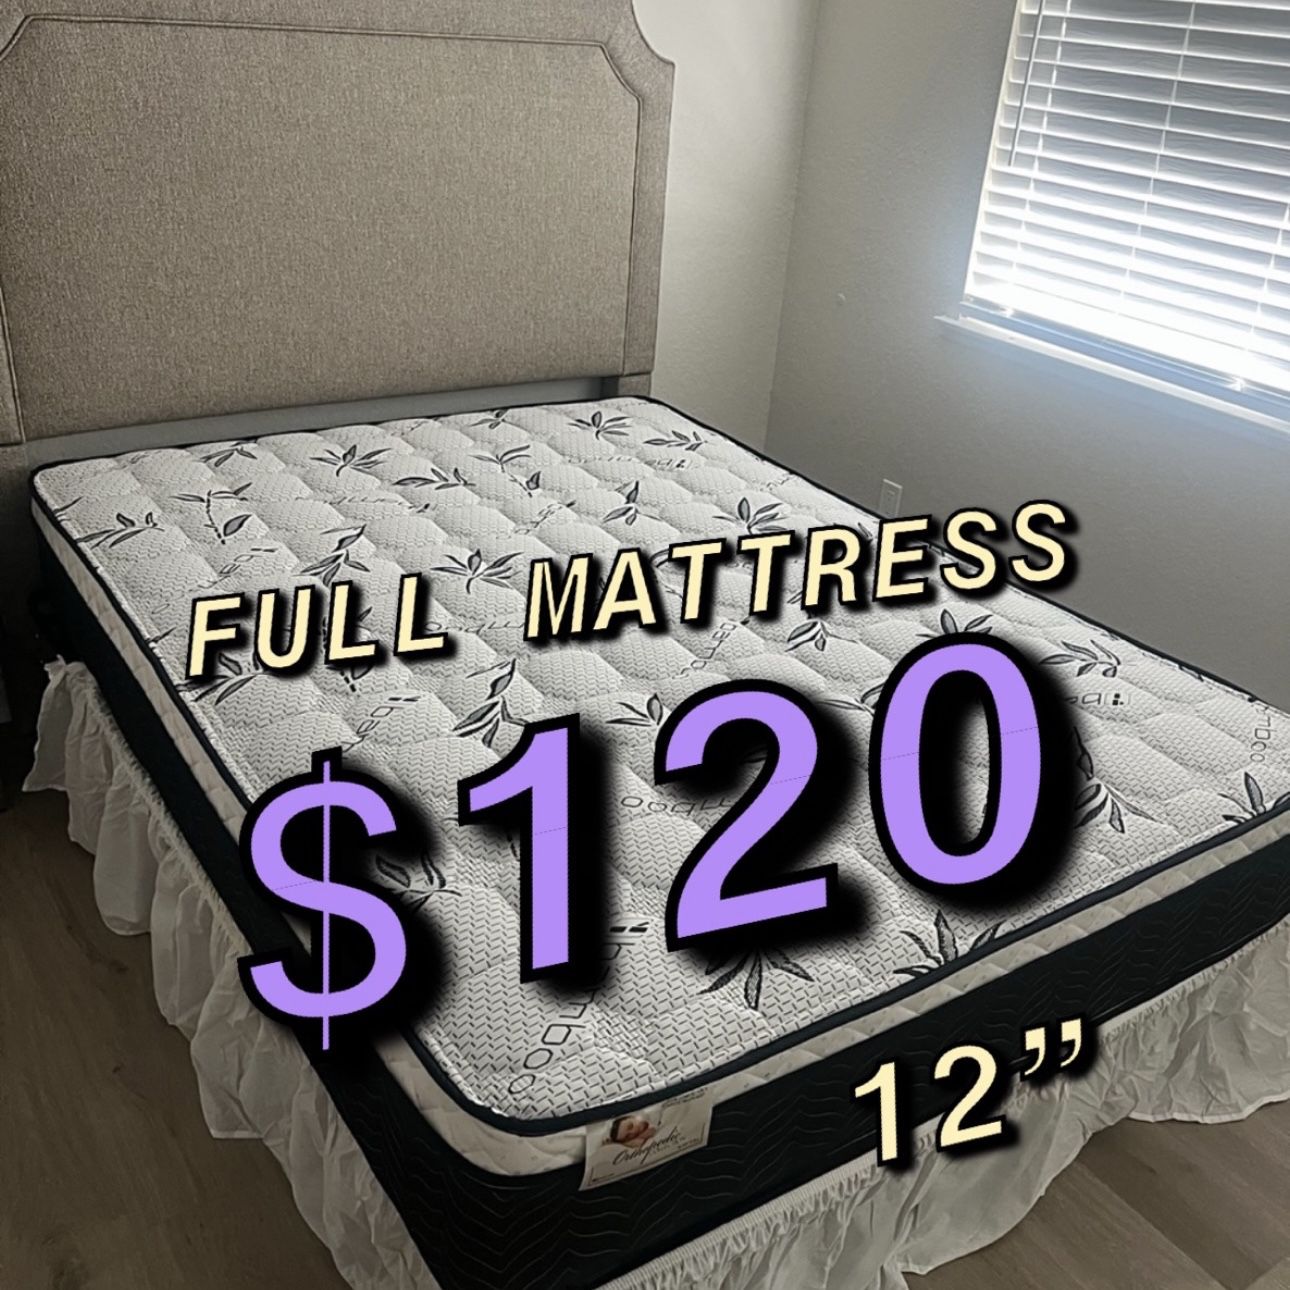 New Full Matttress $120